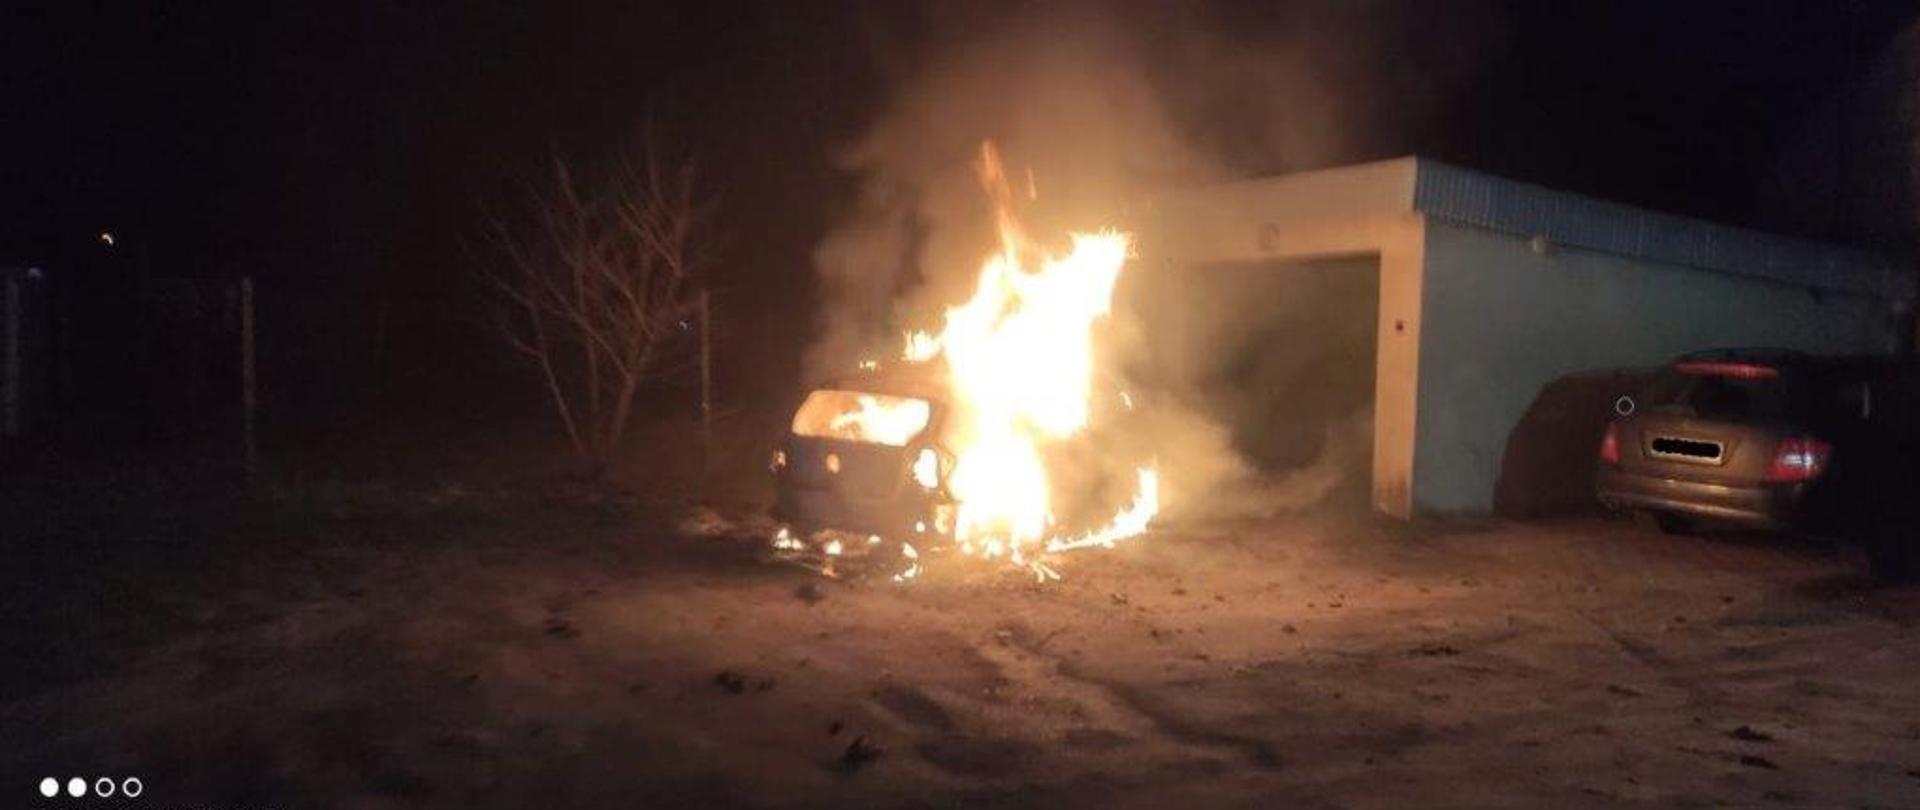 Zdjęcie przedstawia objęty pożarem samochód osobowy w porze nocnej. Samochód zaparkowany jest przy garażu.